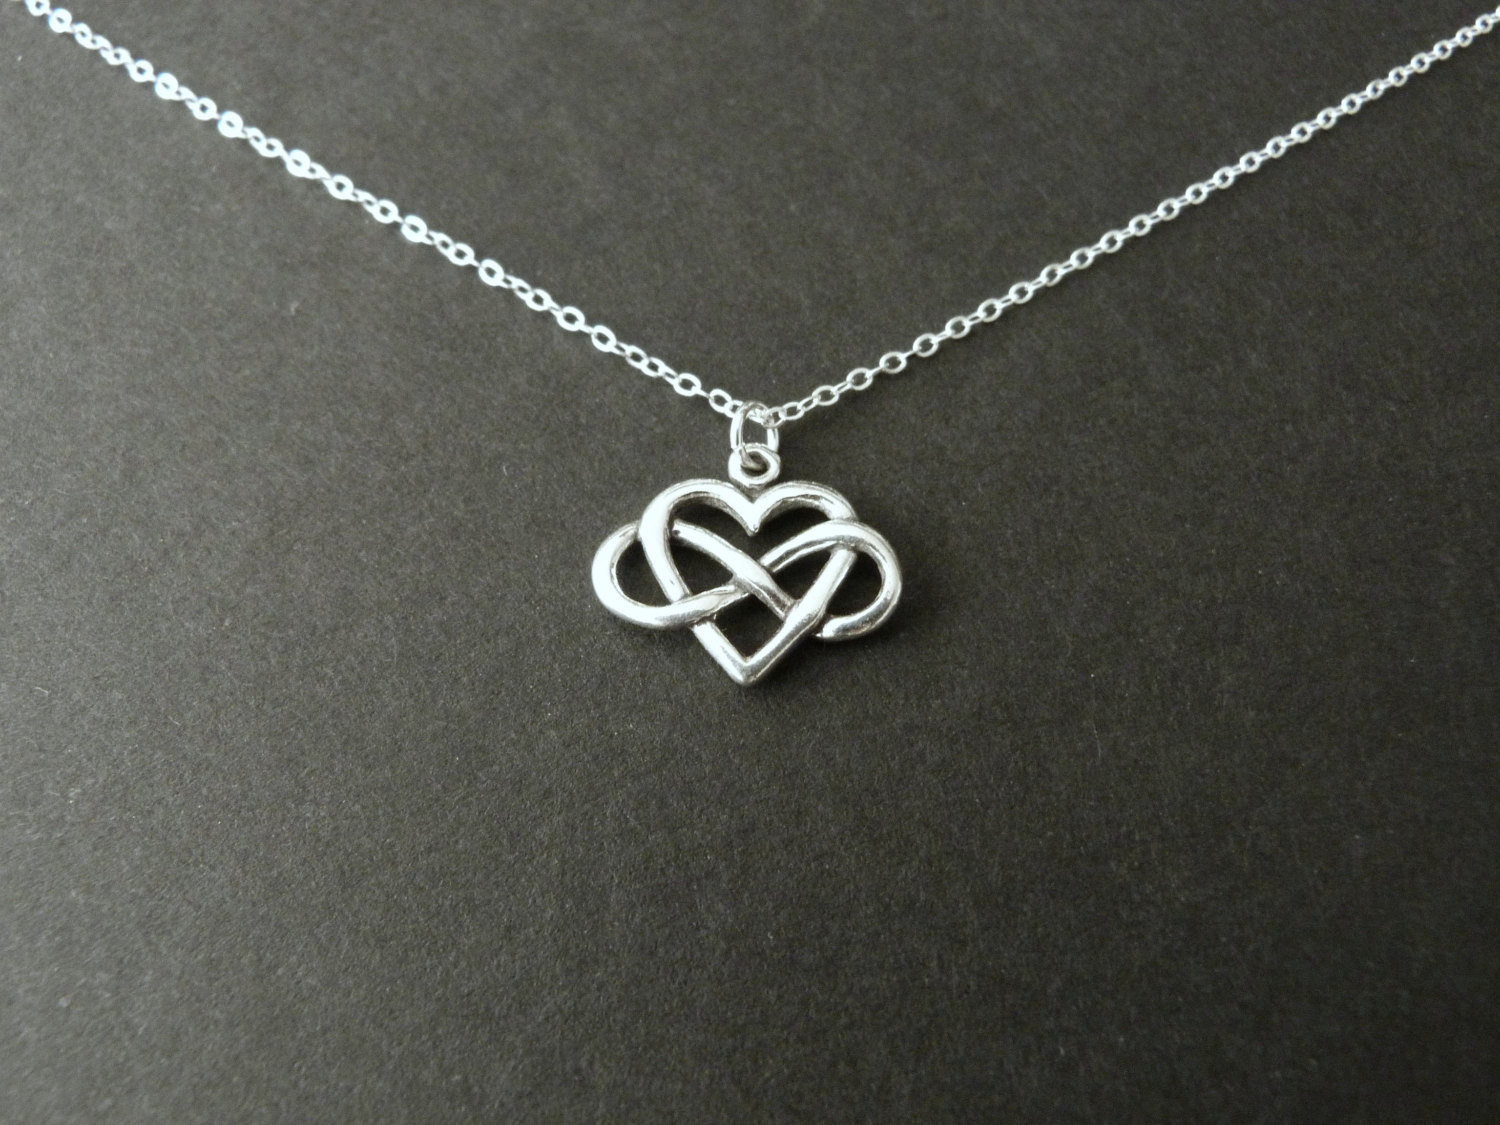 Jewelry Gift Ideas For Girlfriend
 Girlfriend t infinity heart necklace best seller always